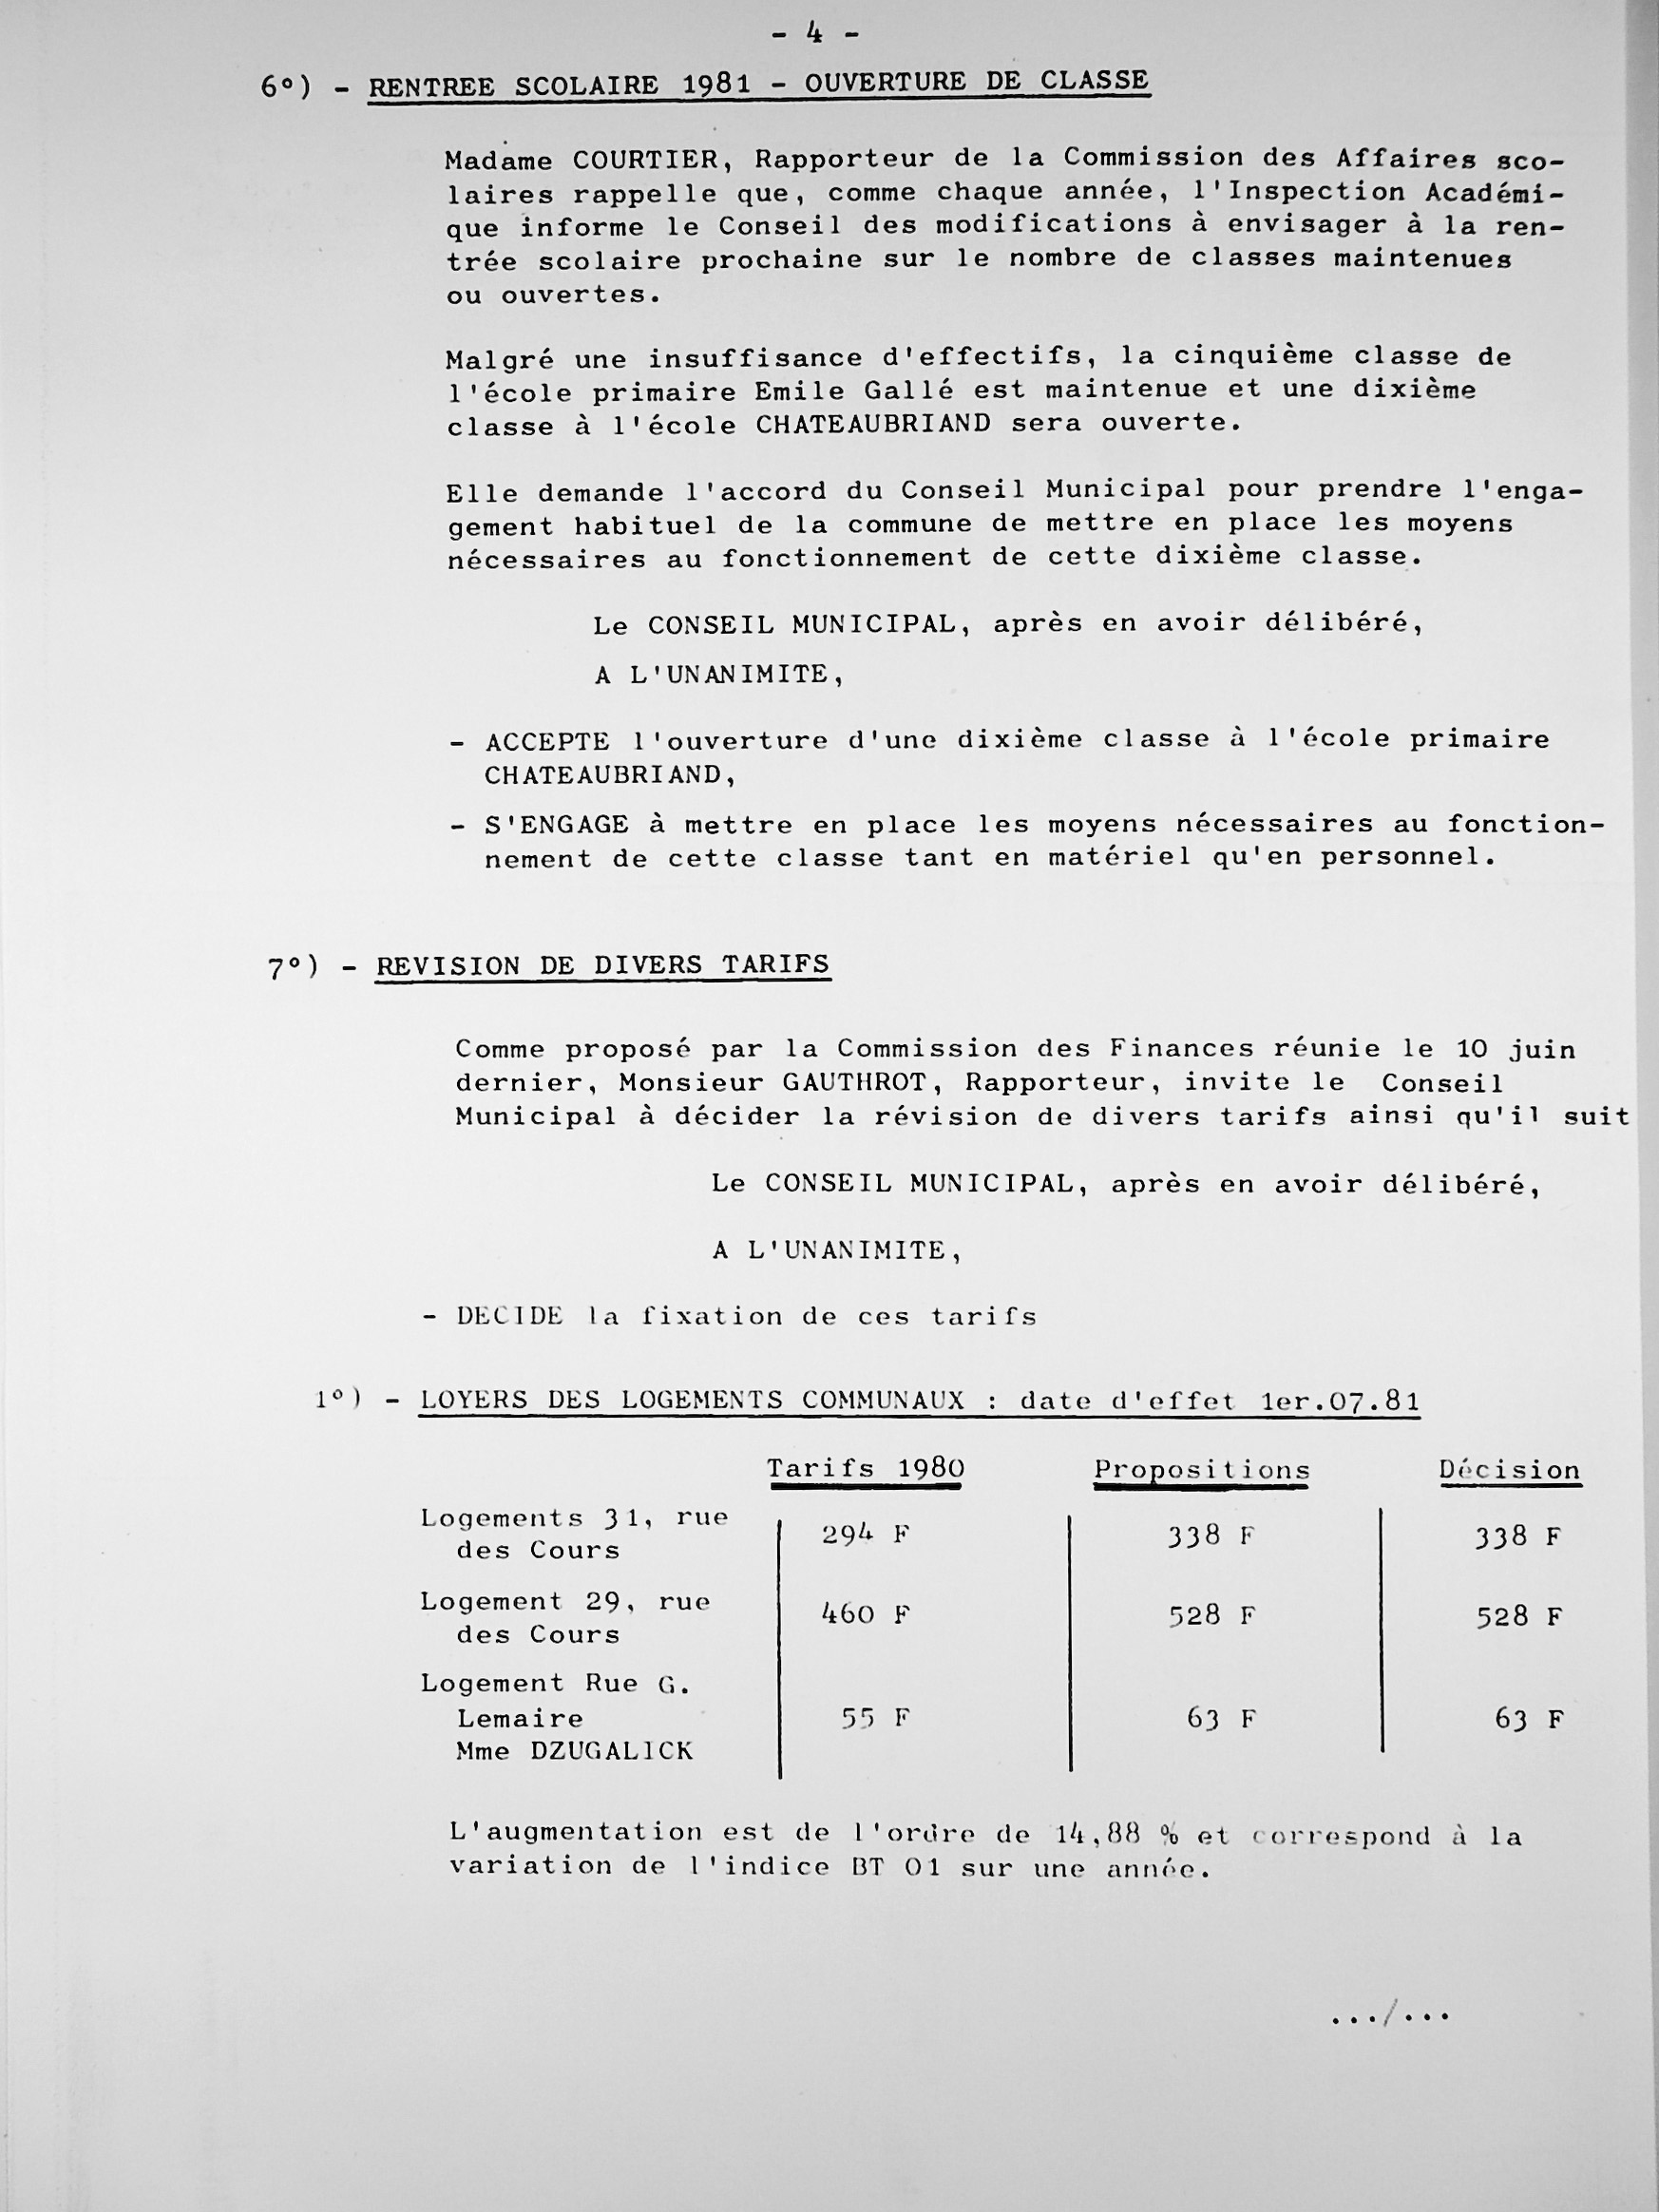 Feuillet_040B-1980-1983.jpg